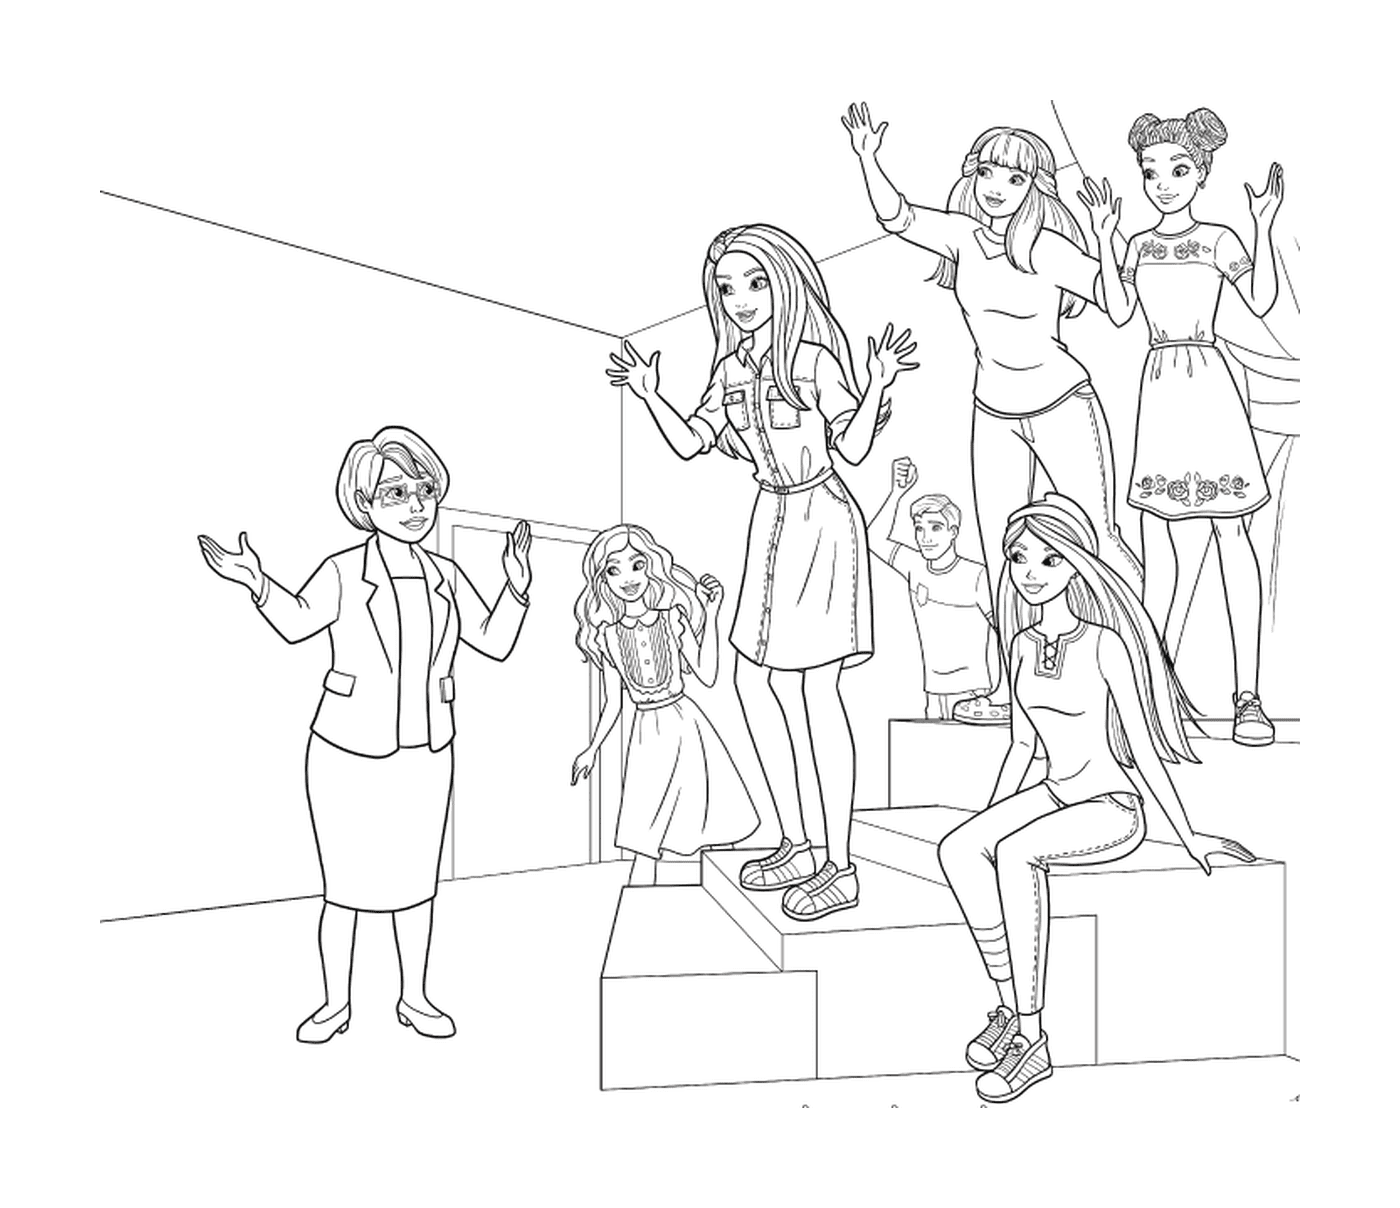  Un grupo de mujeres jóvenes de pie lado a lado 